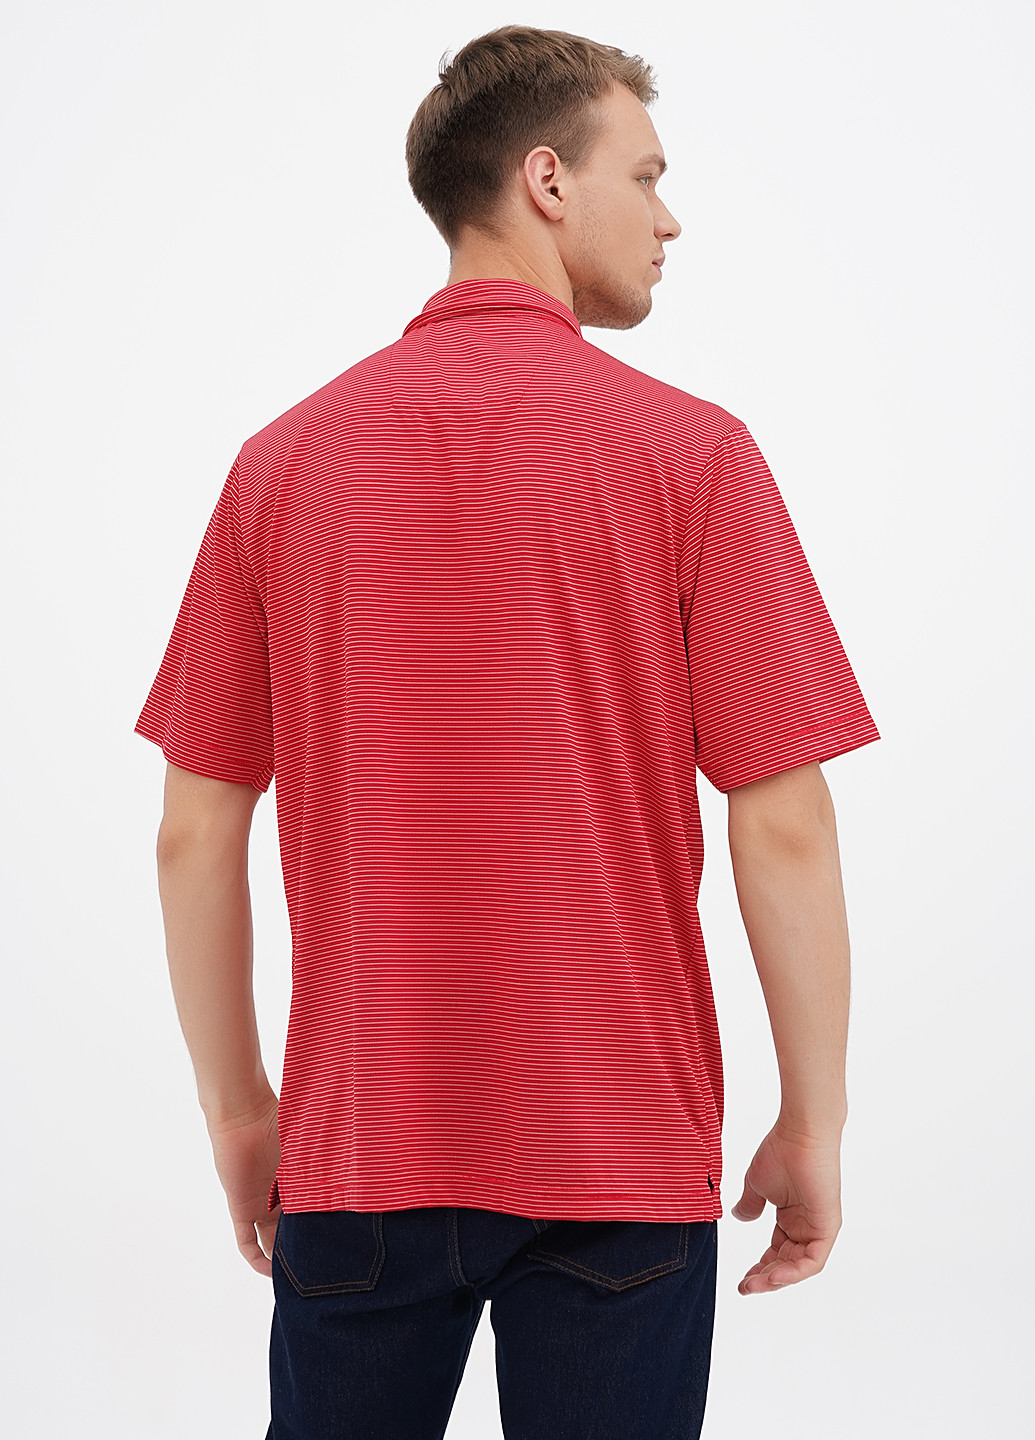 Красная футболка-поло для мужчин Antigua в полоску